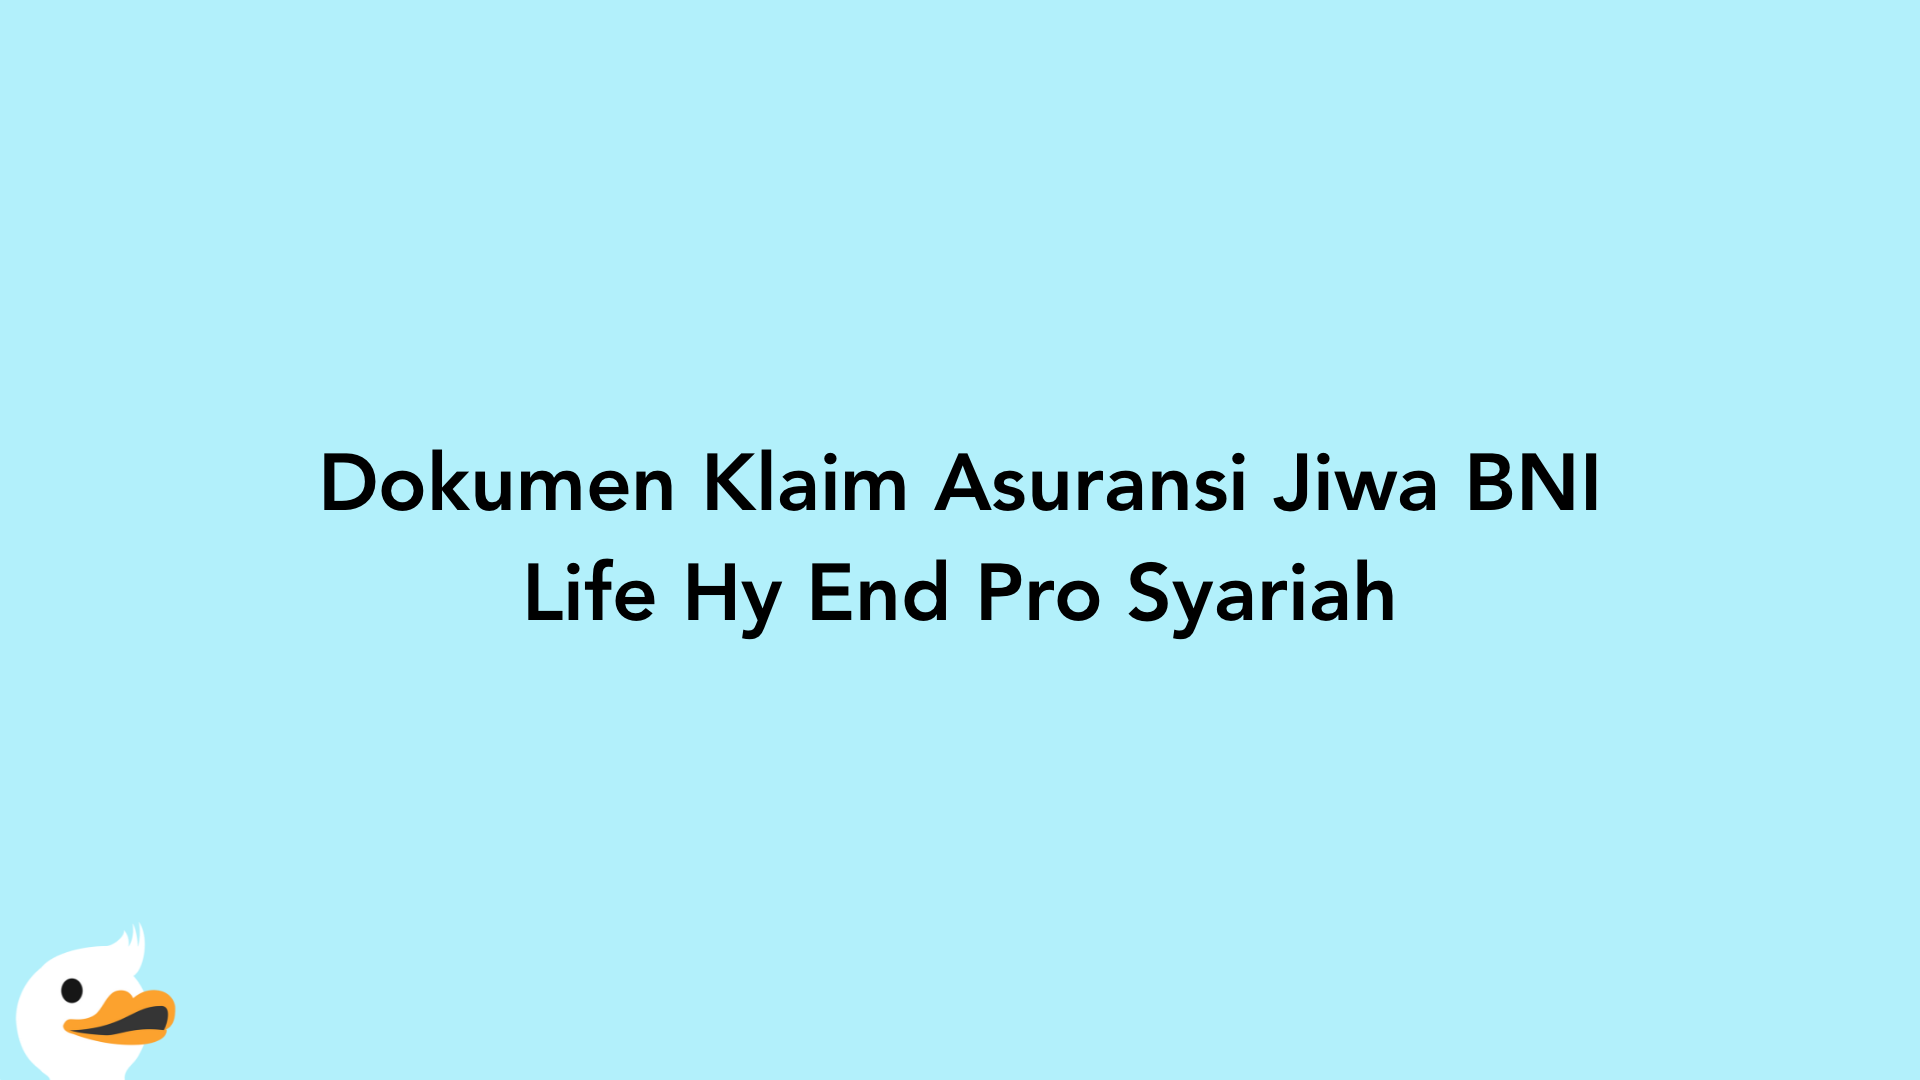 Dokumen Klaim Asuransi Jiwa BNI Life Hy End Pro Syariah